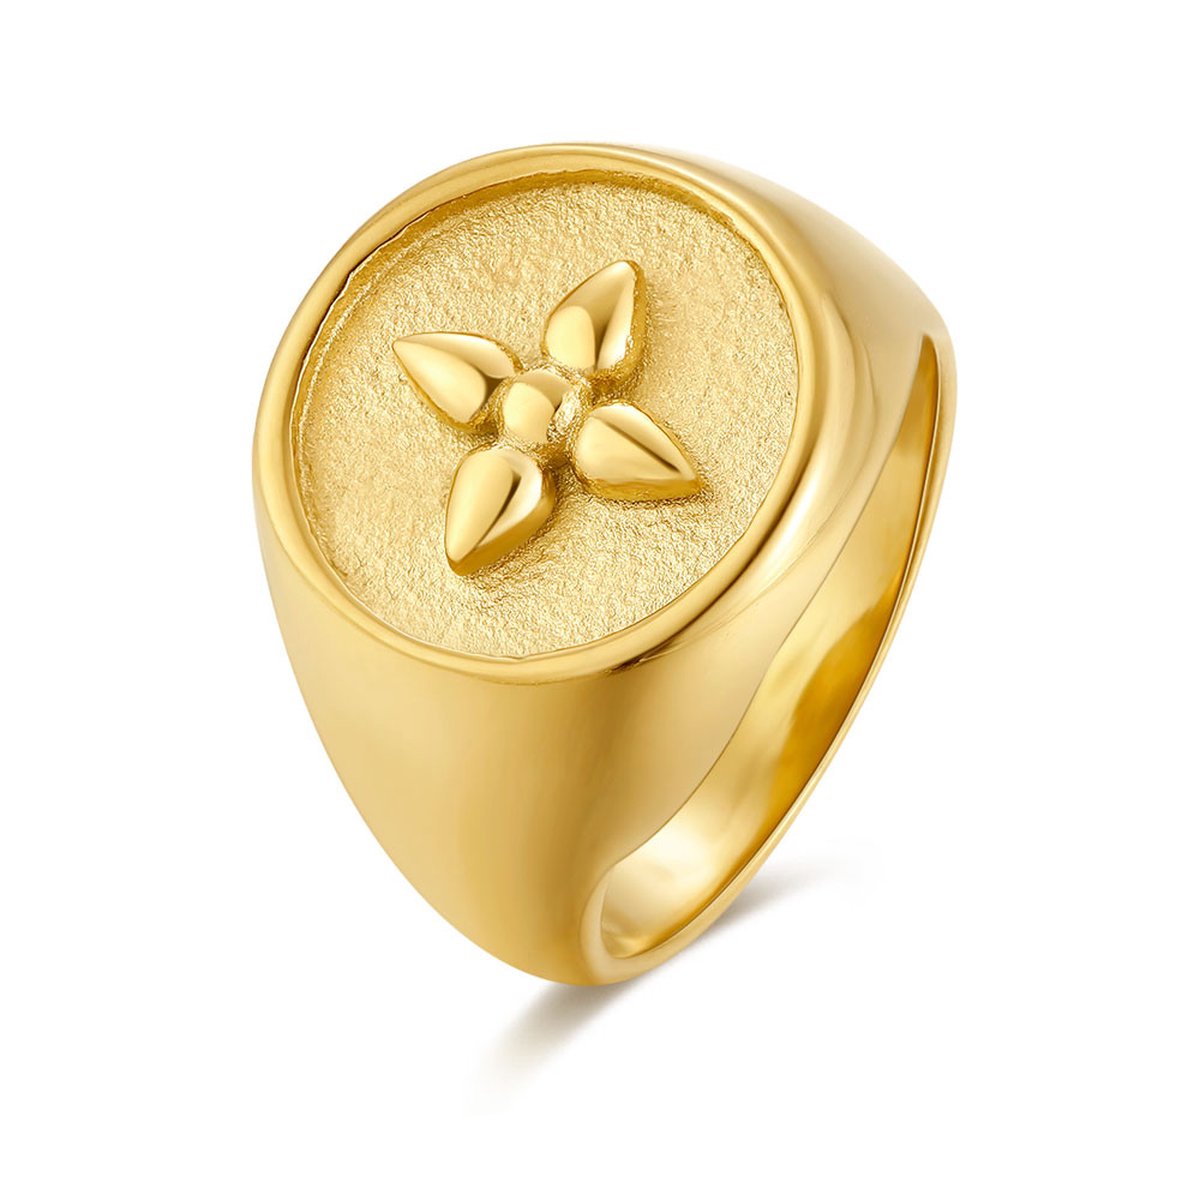 Twice As Nice Ring in goudkleurig edelstaal, ronde zadel ring, bloem 58